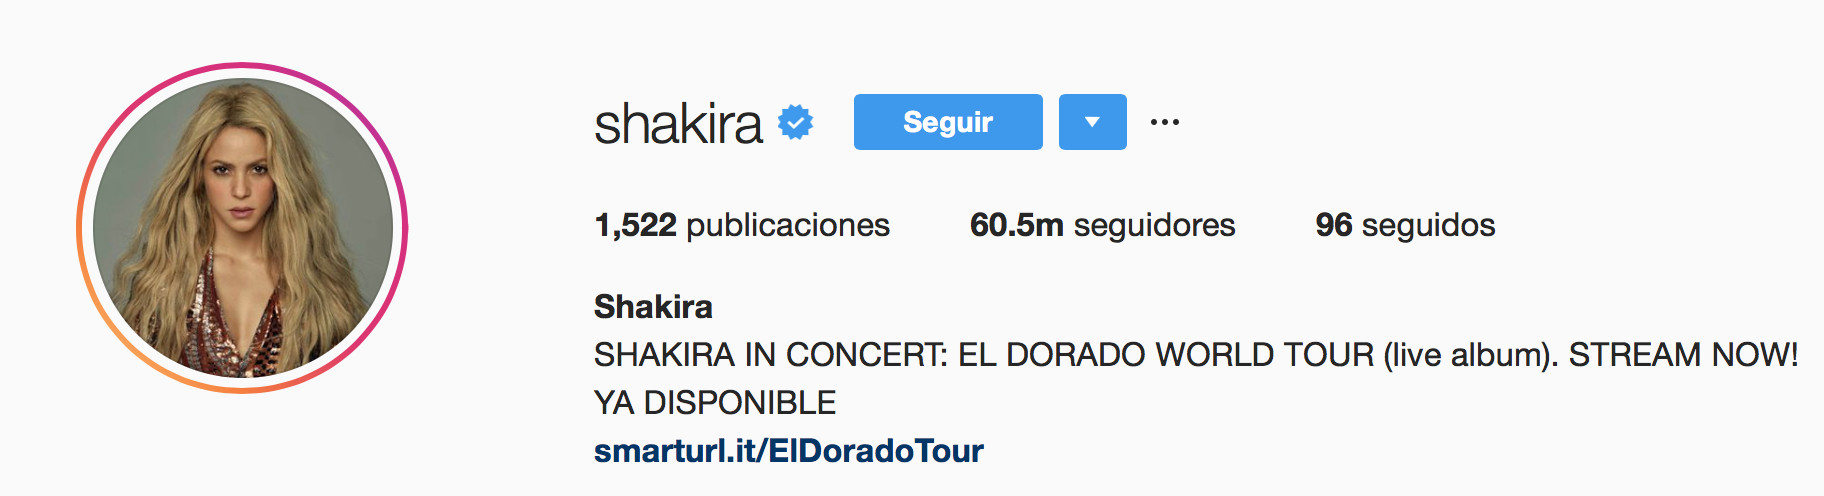 seguidores Shakira